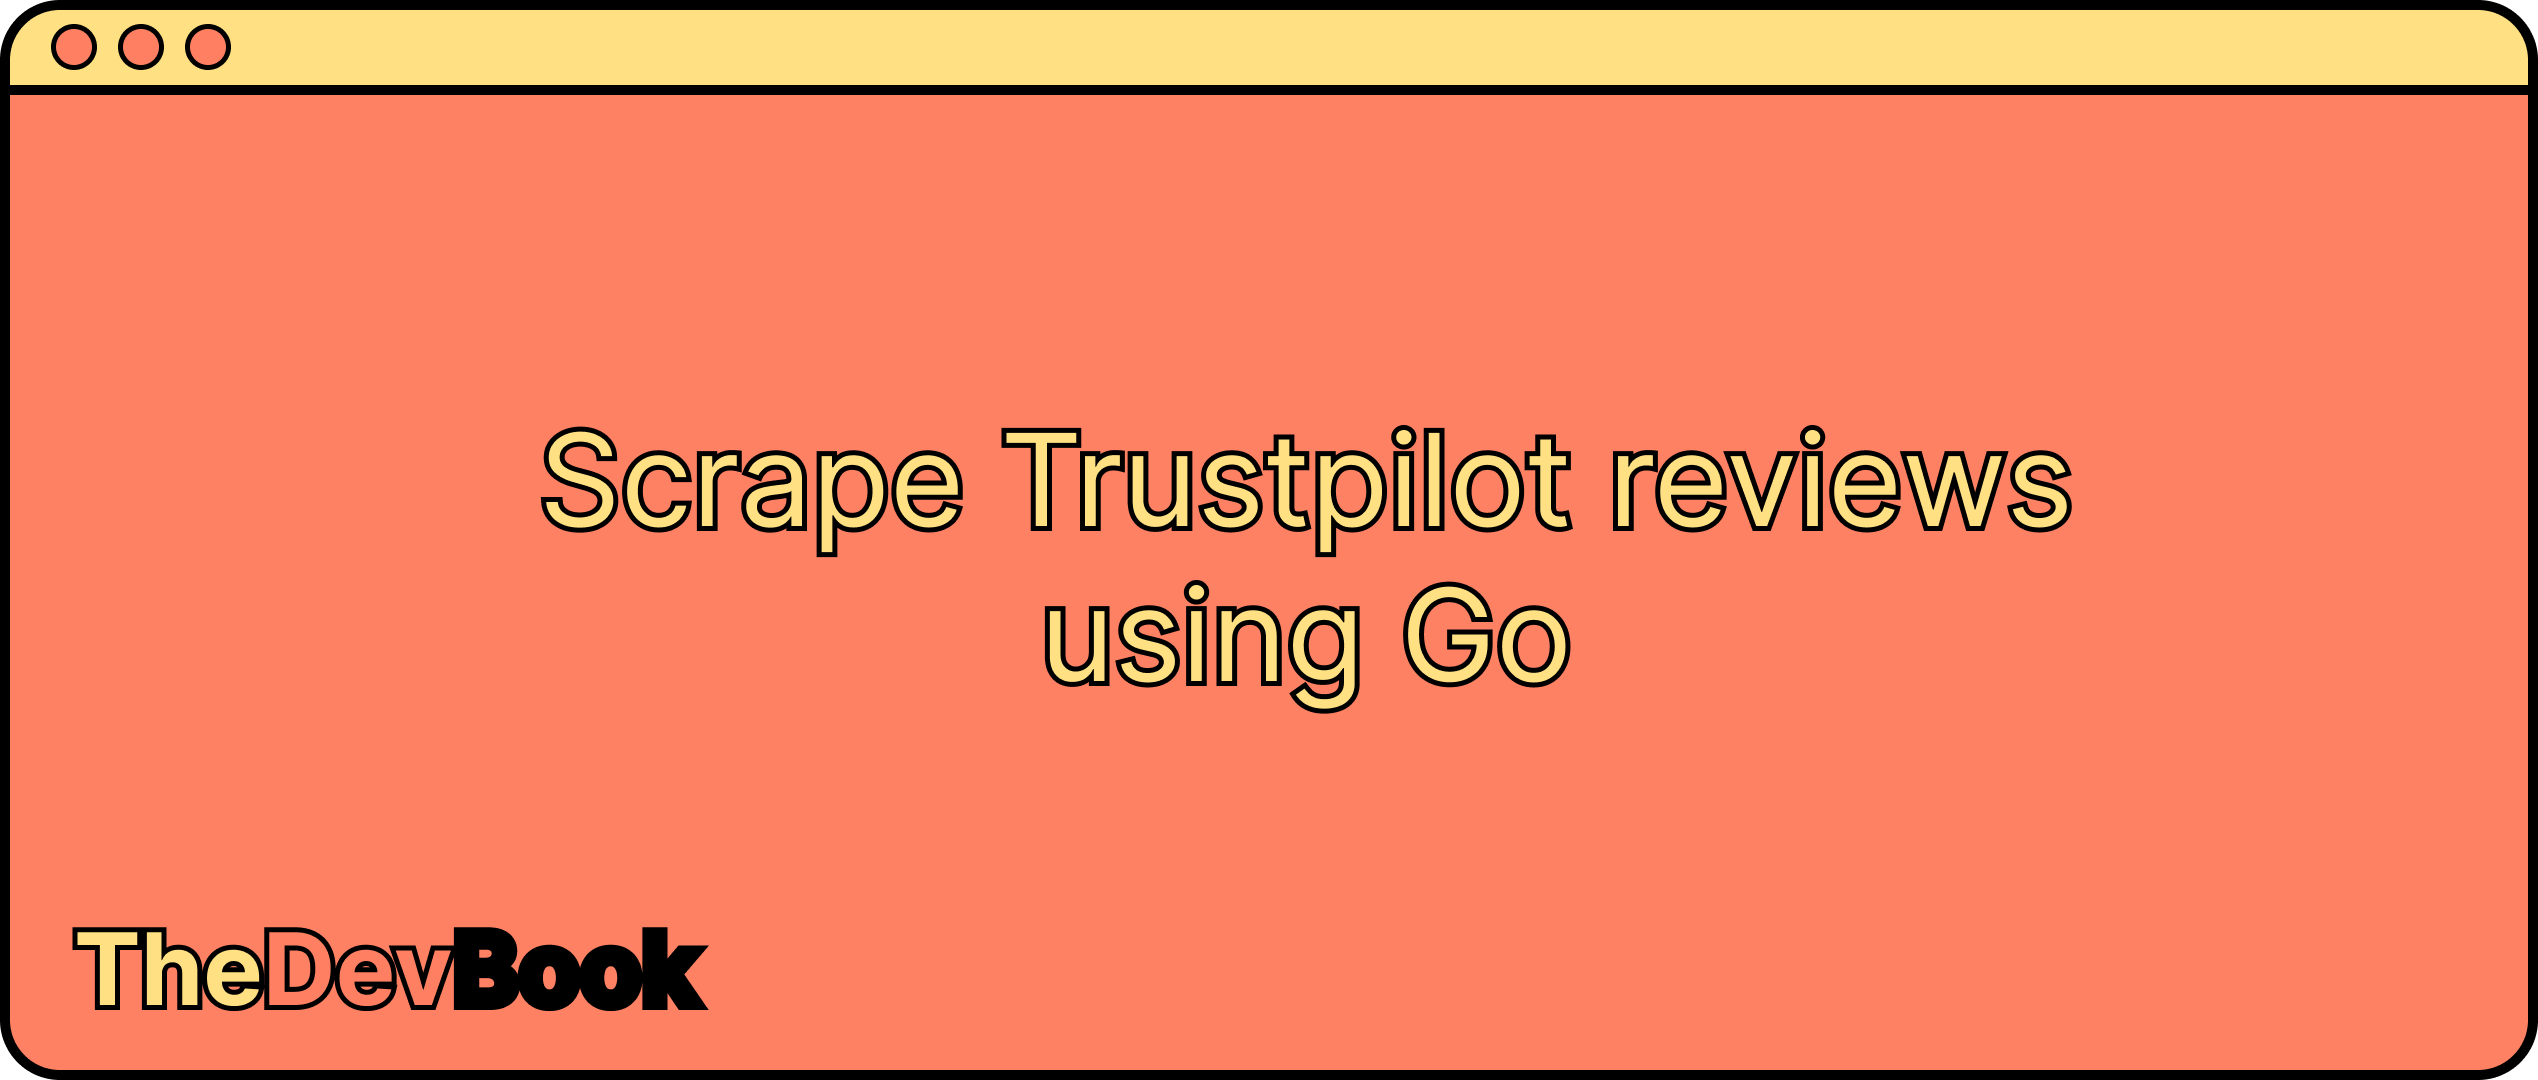 Scrape Trustpilot reviews using Go